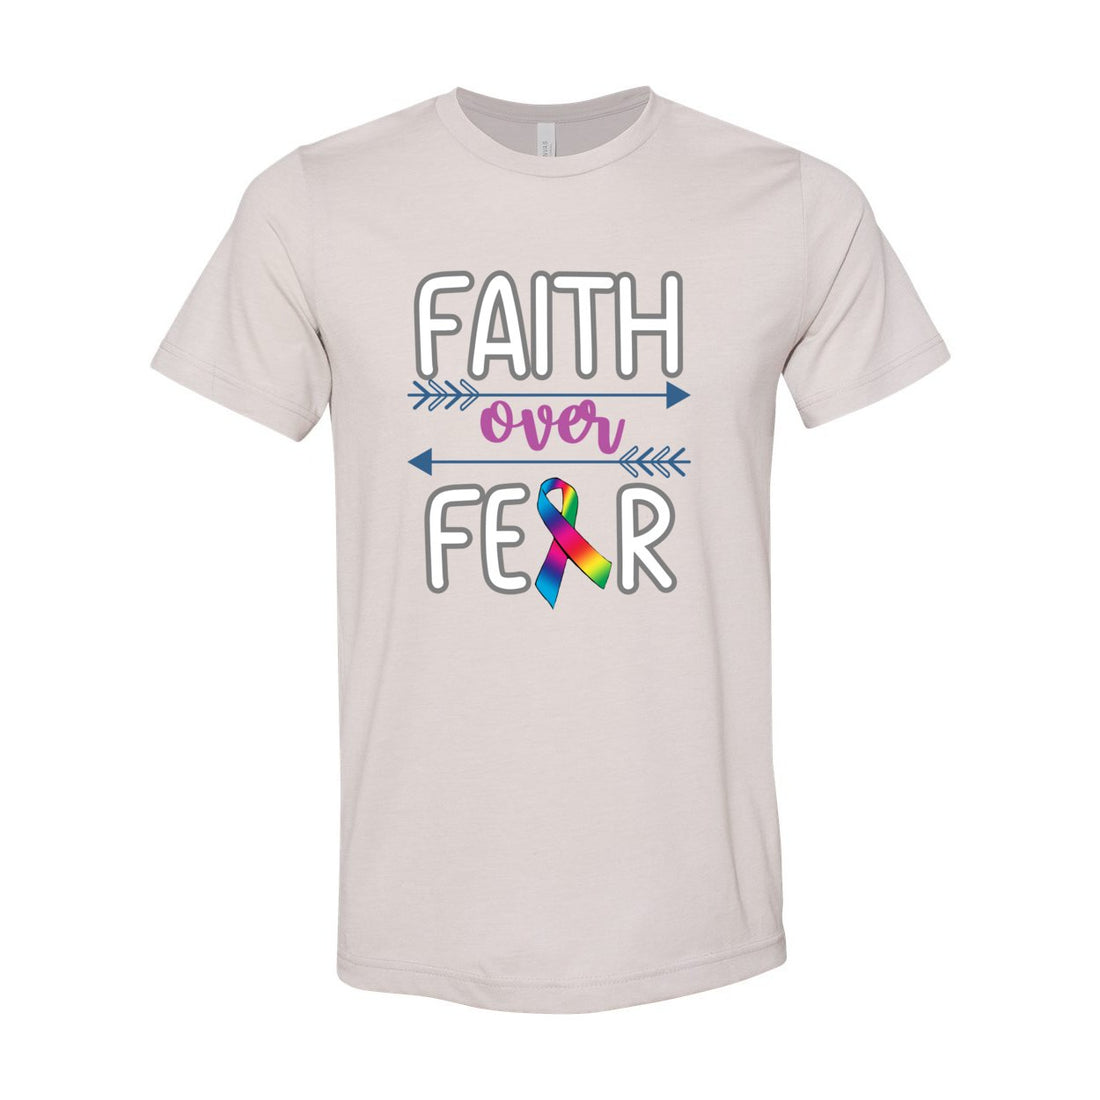 Faith Over Fear - T-Shirts - Positively Sassy - Faith Over Fear